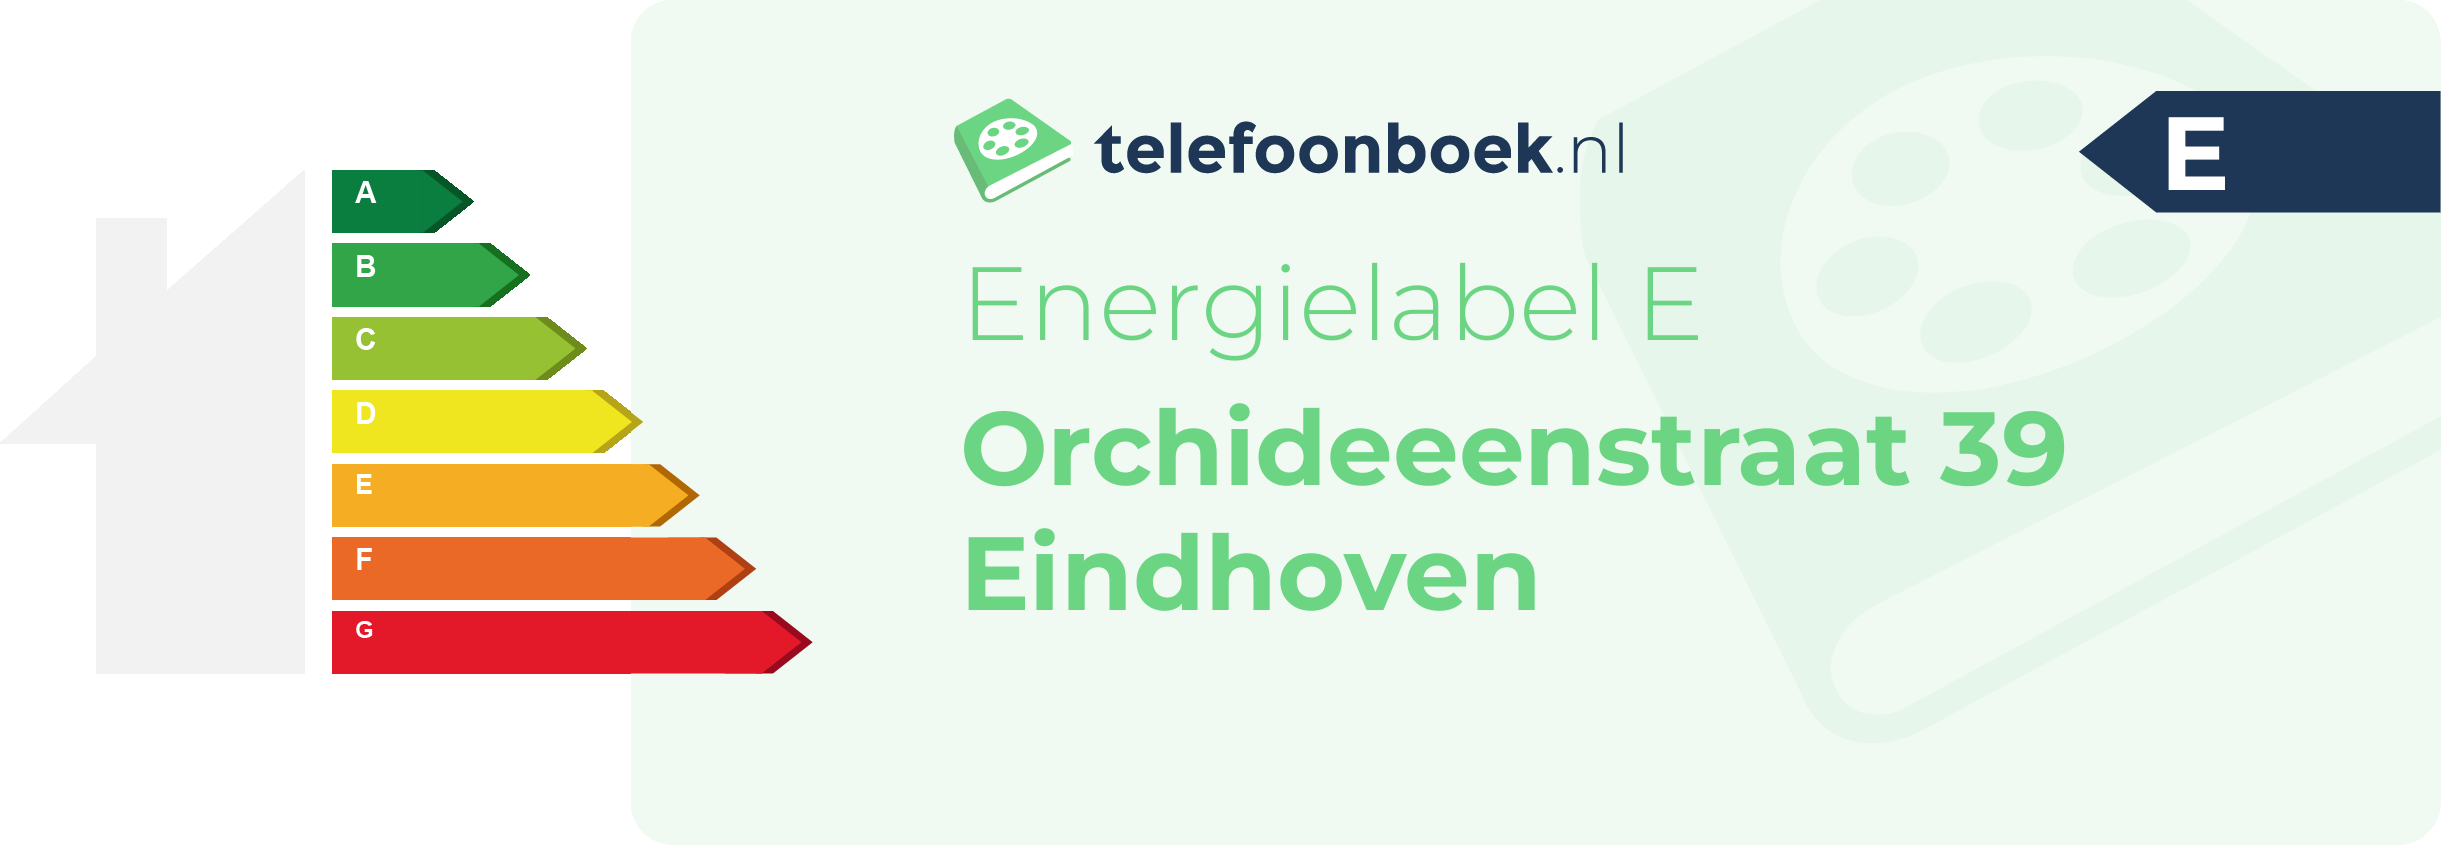 Energielabel Orchideeenstraat 39 Eindhoven